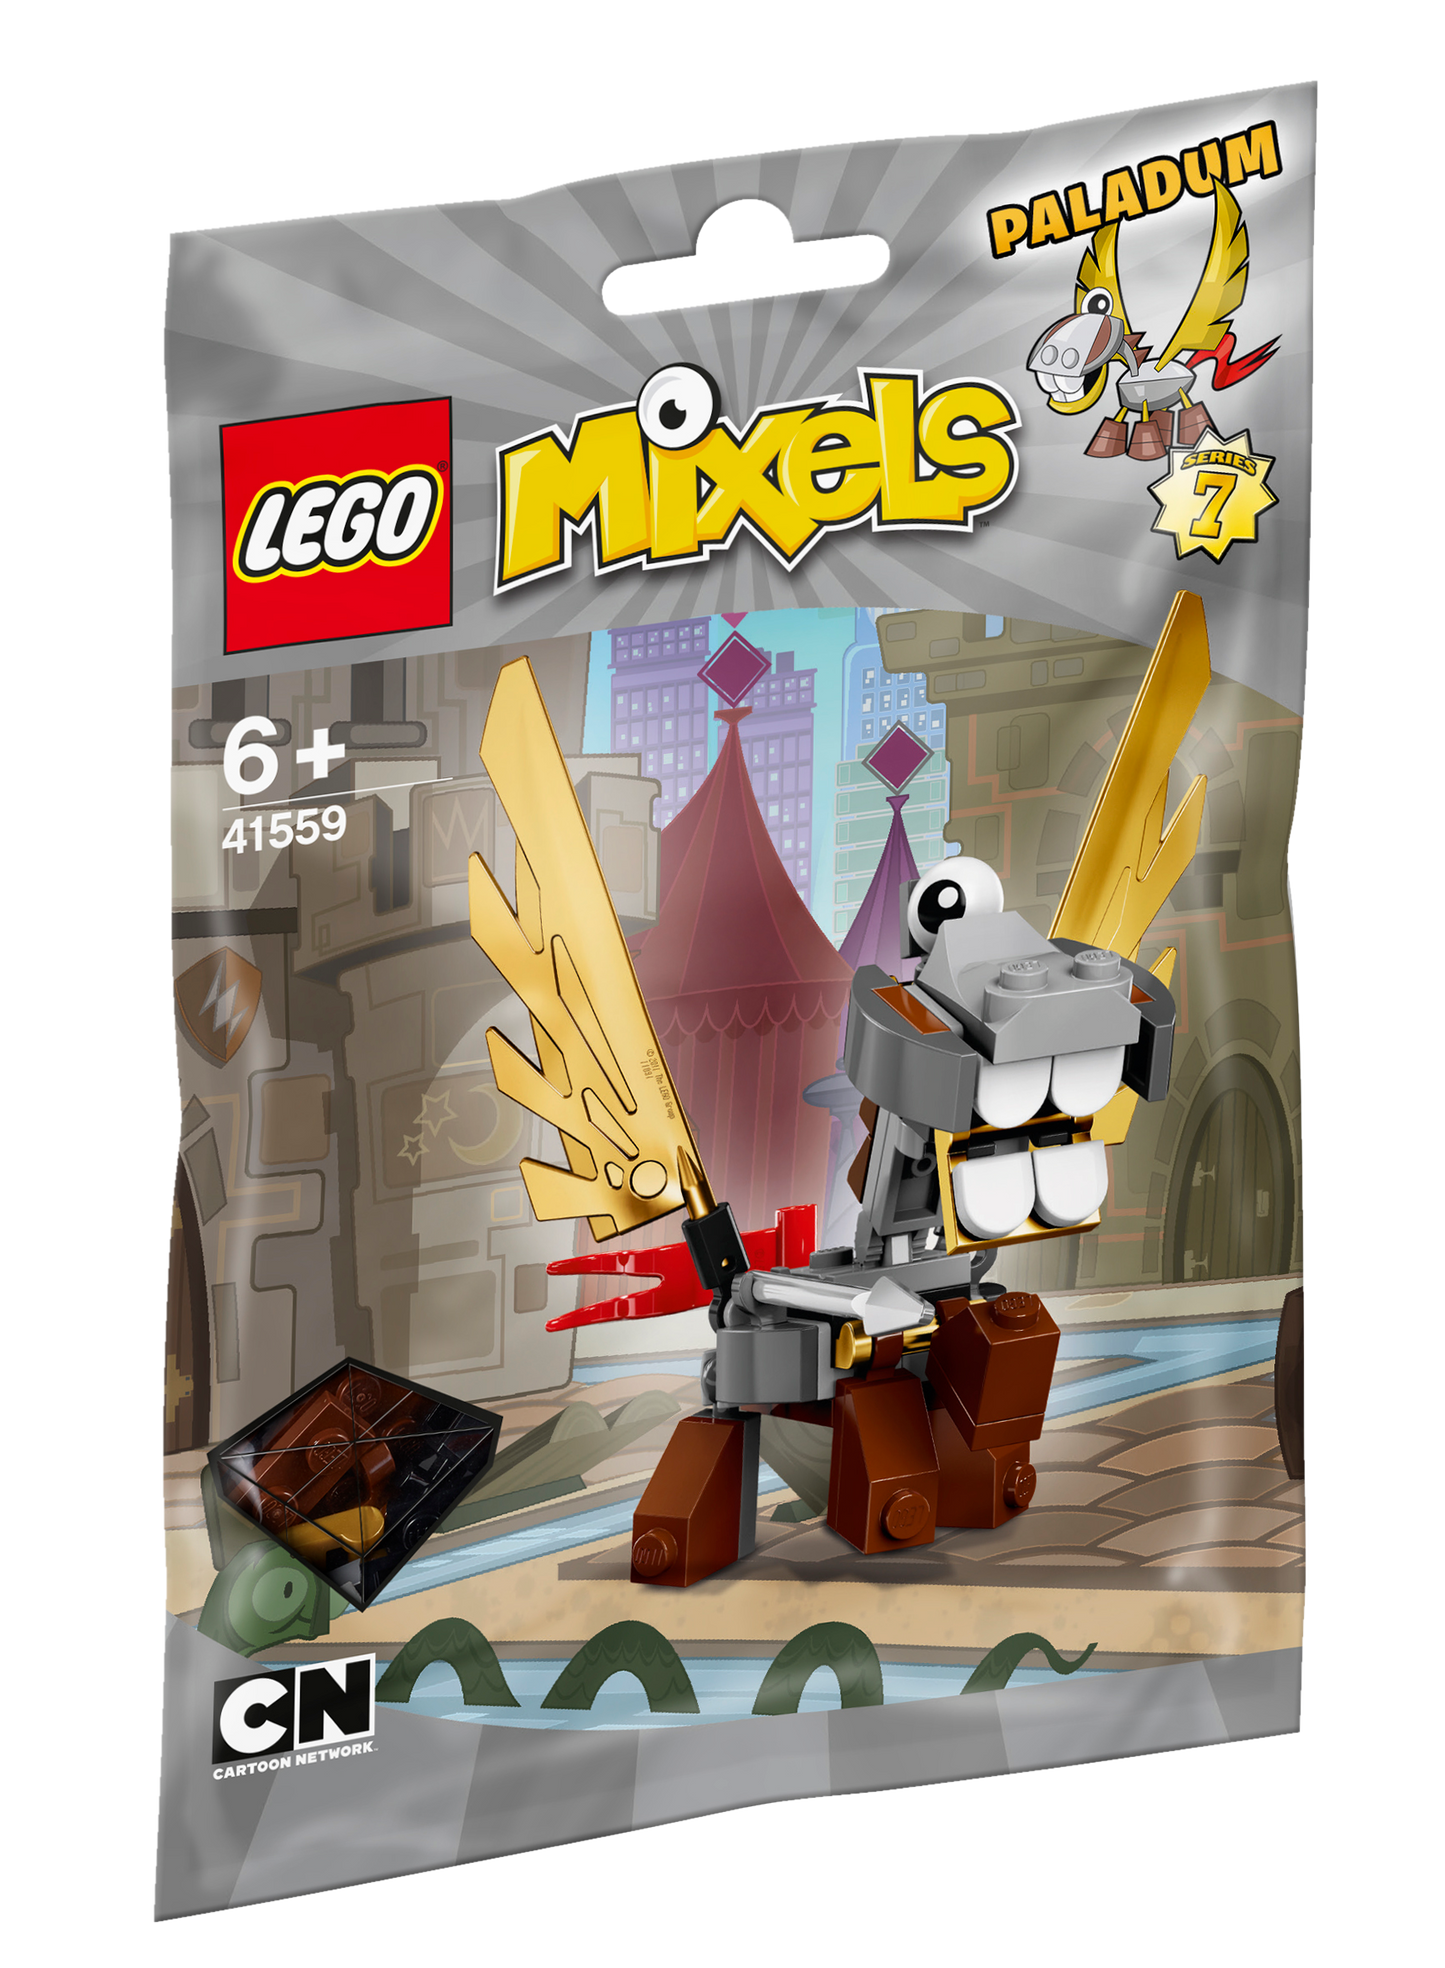 Lego Mixels Paladum 41559